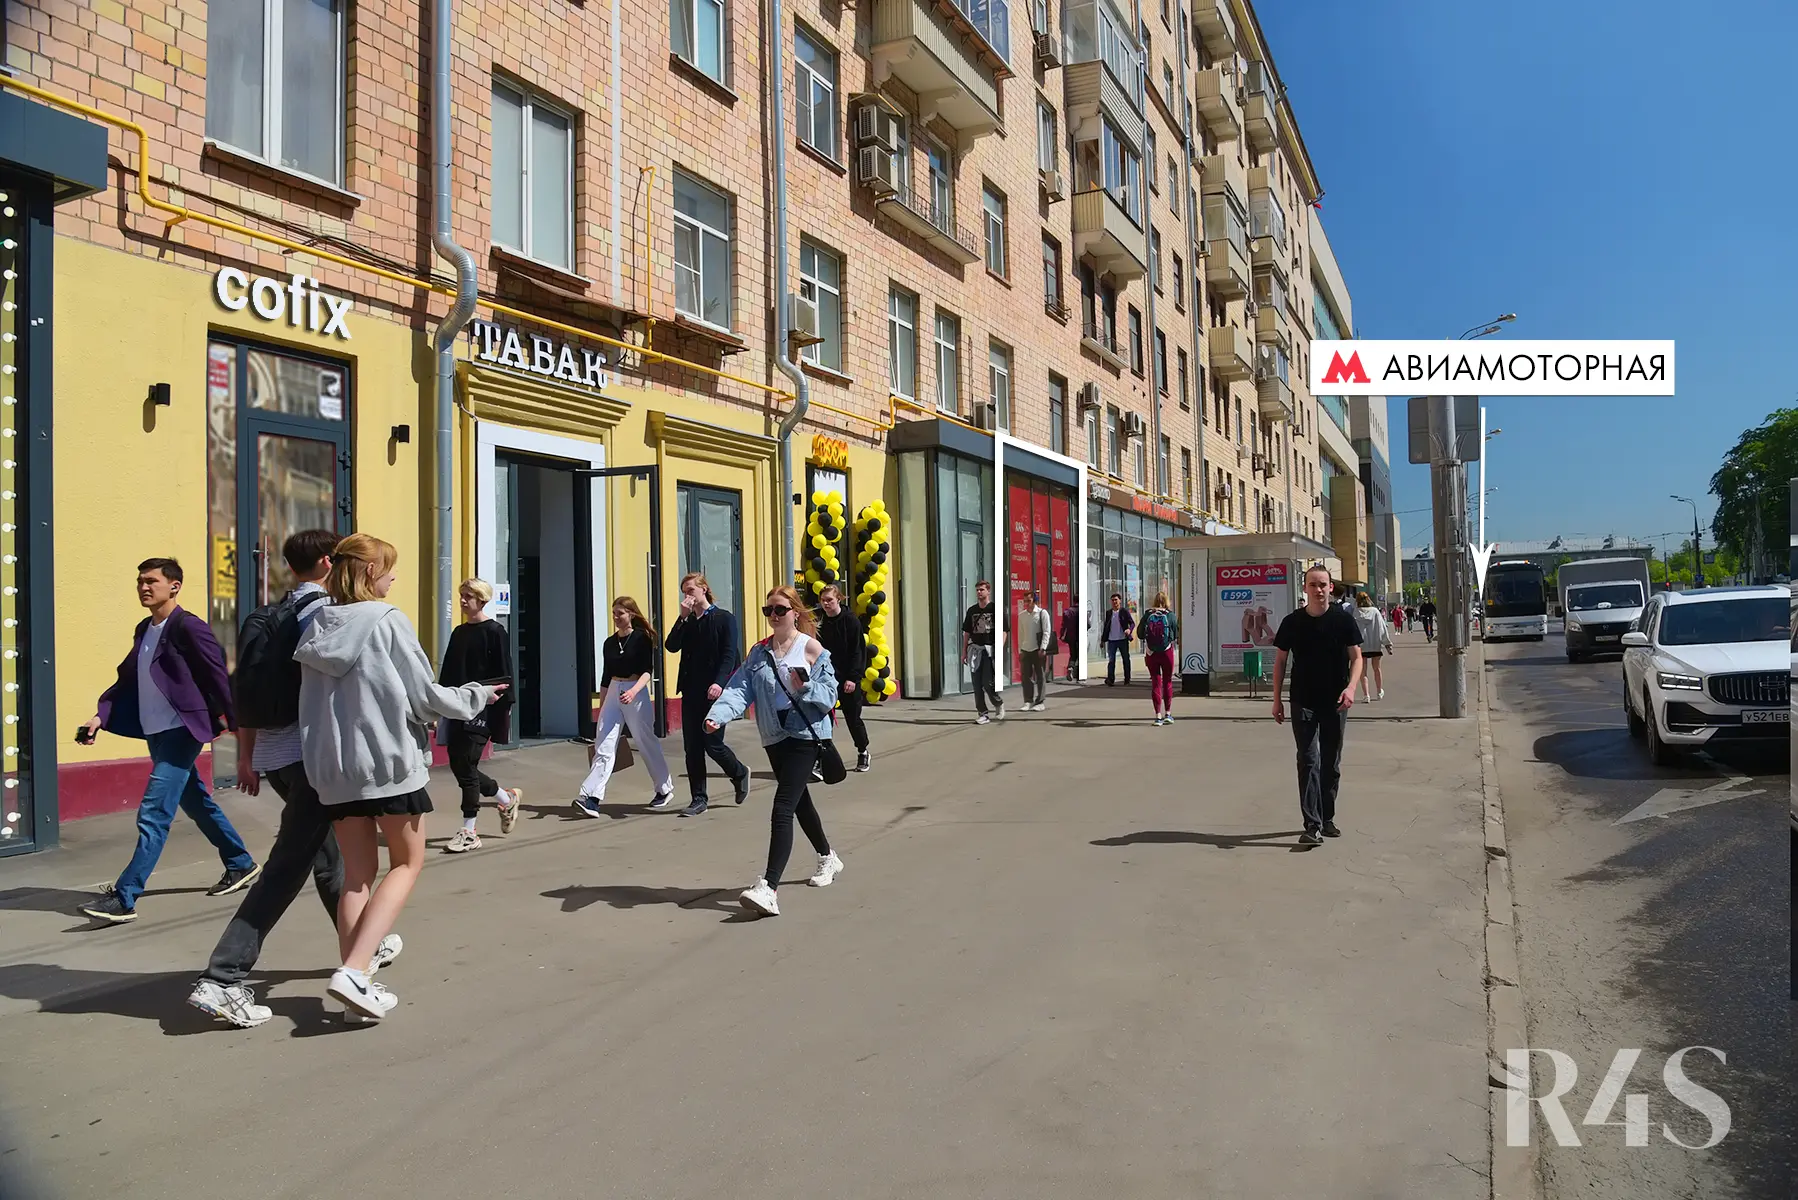 Аренда торгового помещения площадью 168.6 м2 в Москве: Красноказарменная, 23 R4S | Realty4Sale